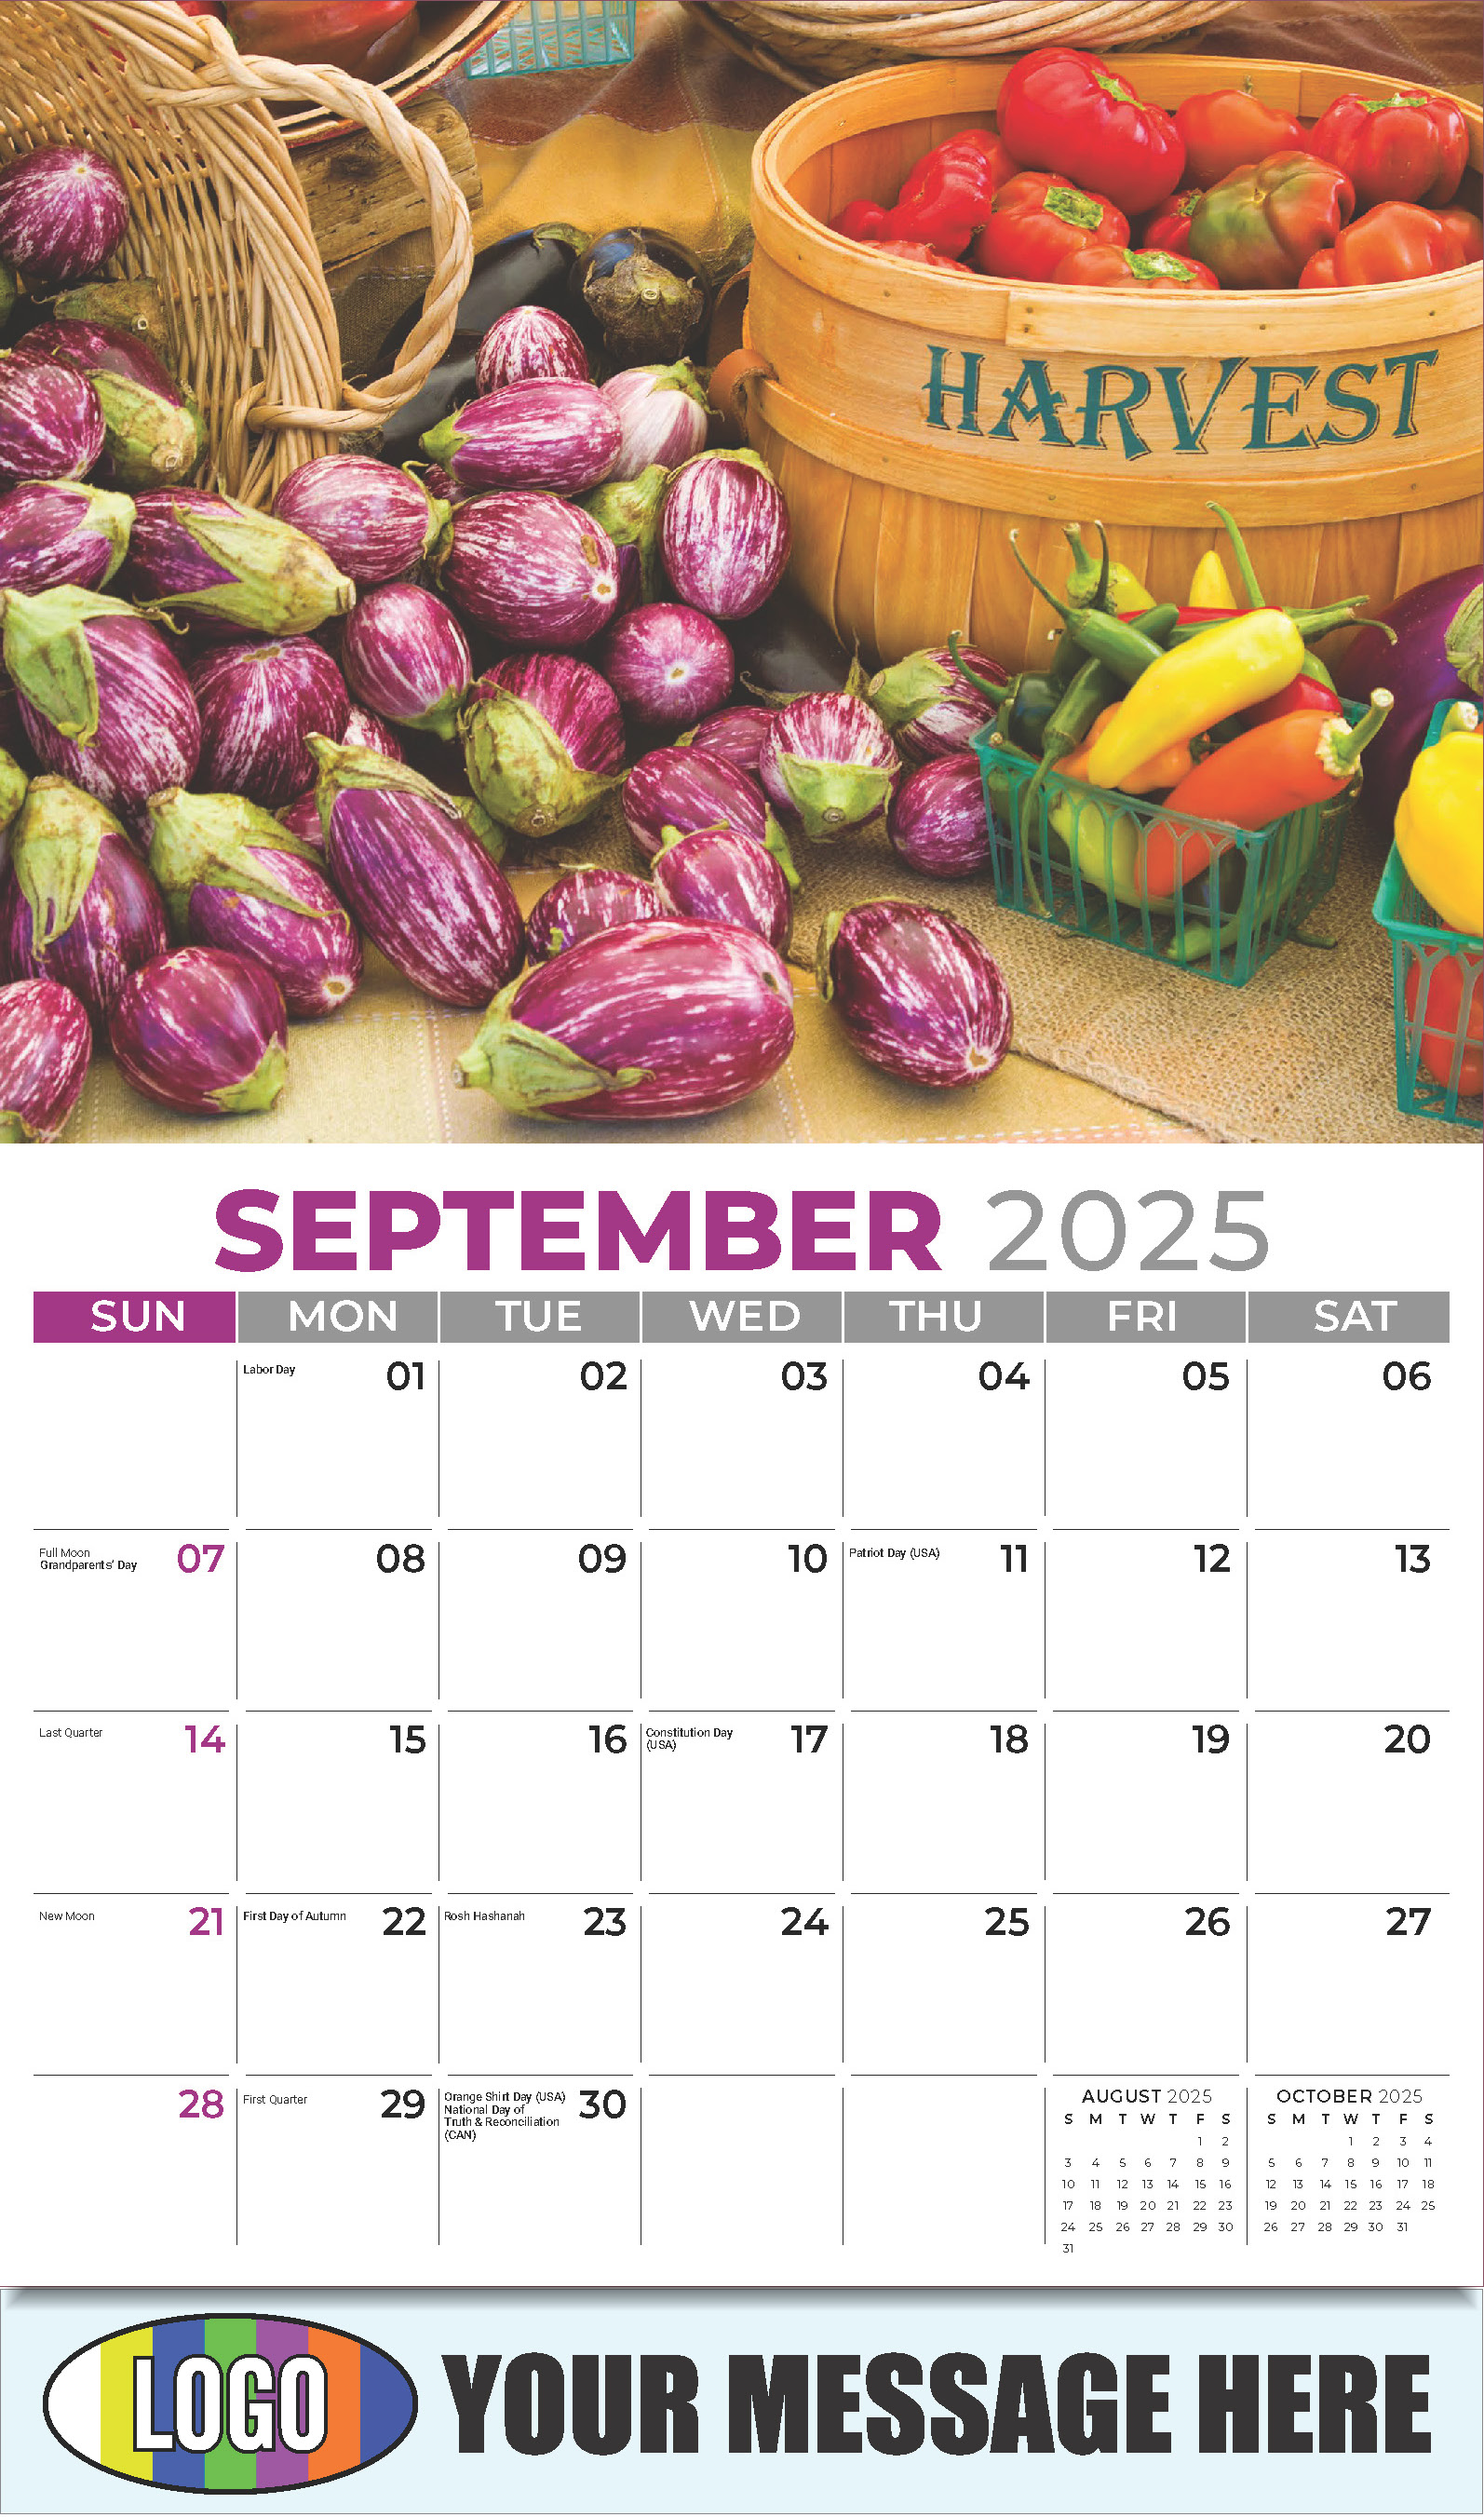 Country Spirit 2025 Business Advertising Calendar - September